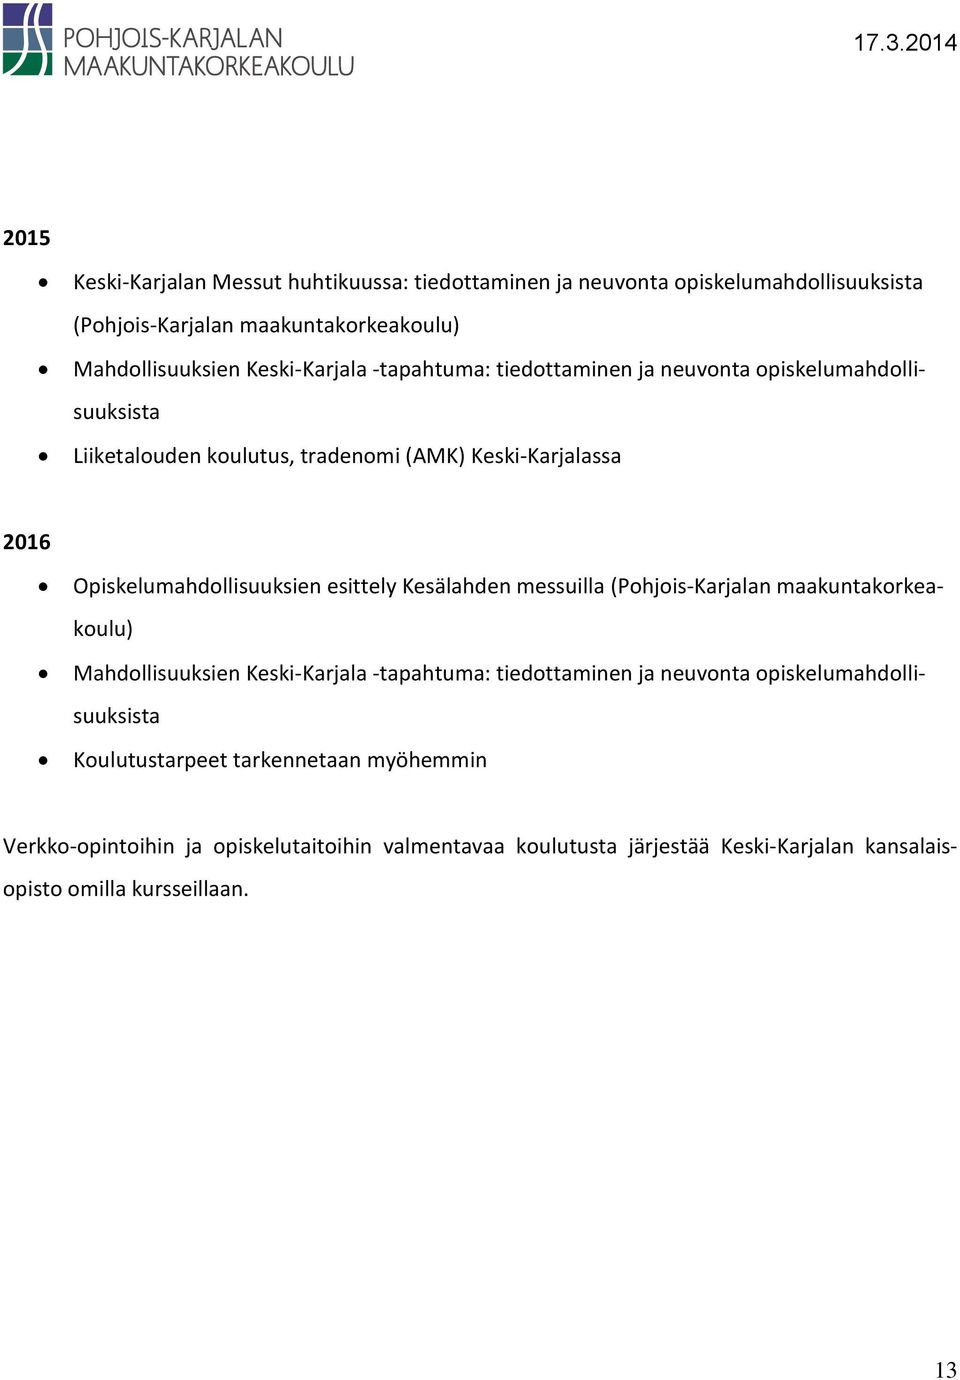 Opiskelumahdollisuuksien esittely Kesälahden messuilla (Pohjois-Karjalan maakuntakorkeakoulu) Mahdollisuuksien Keski-Karjala -tapahtuma: tiedottaminen ja